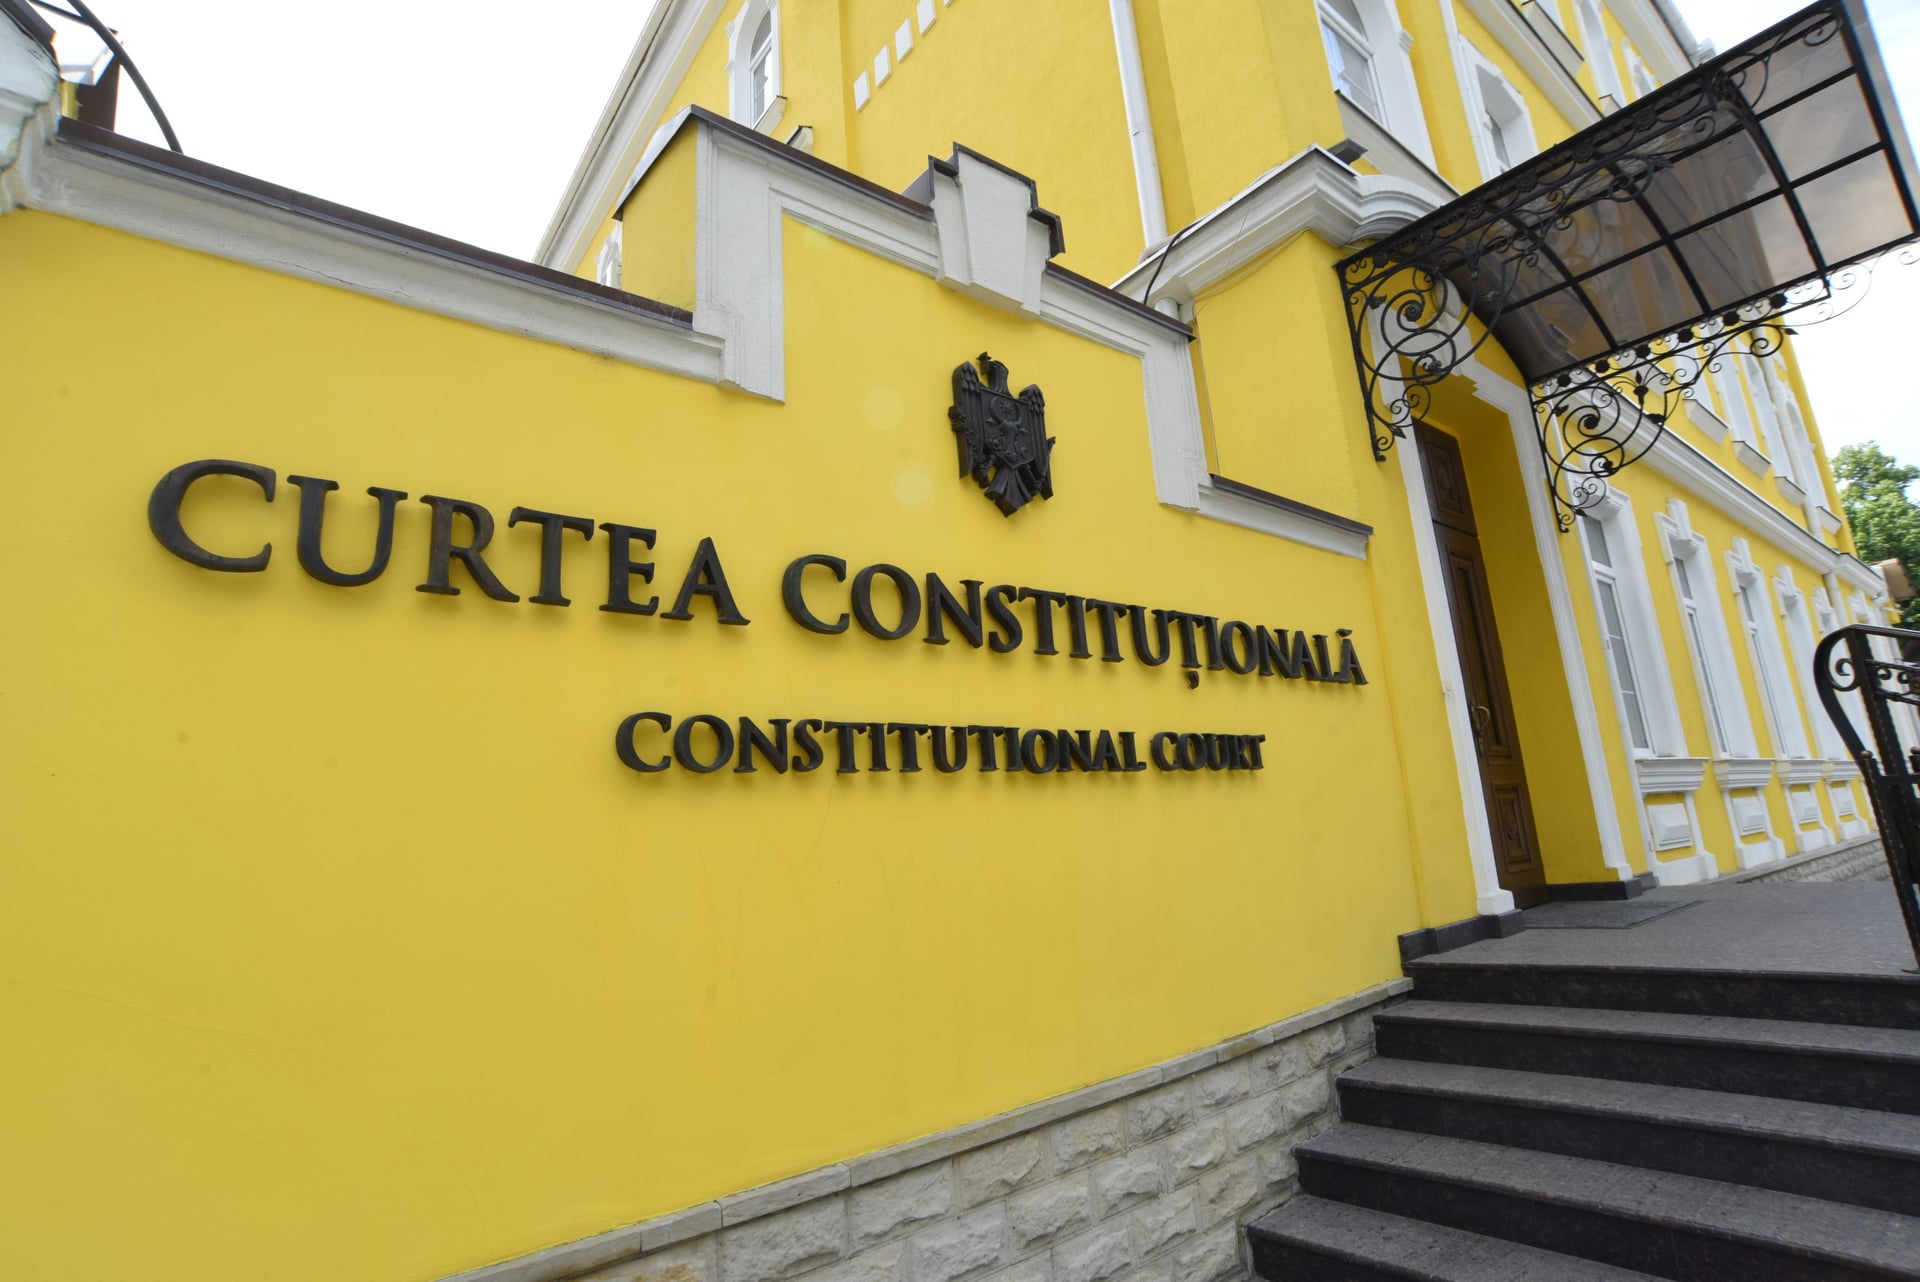 Curtea Constituțională a declarat inadmisibile câteva sesizări privind îmbogățirea ilicită